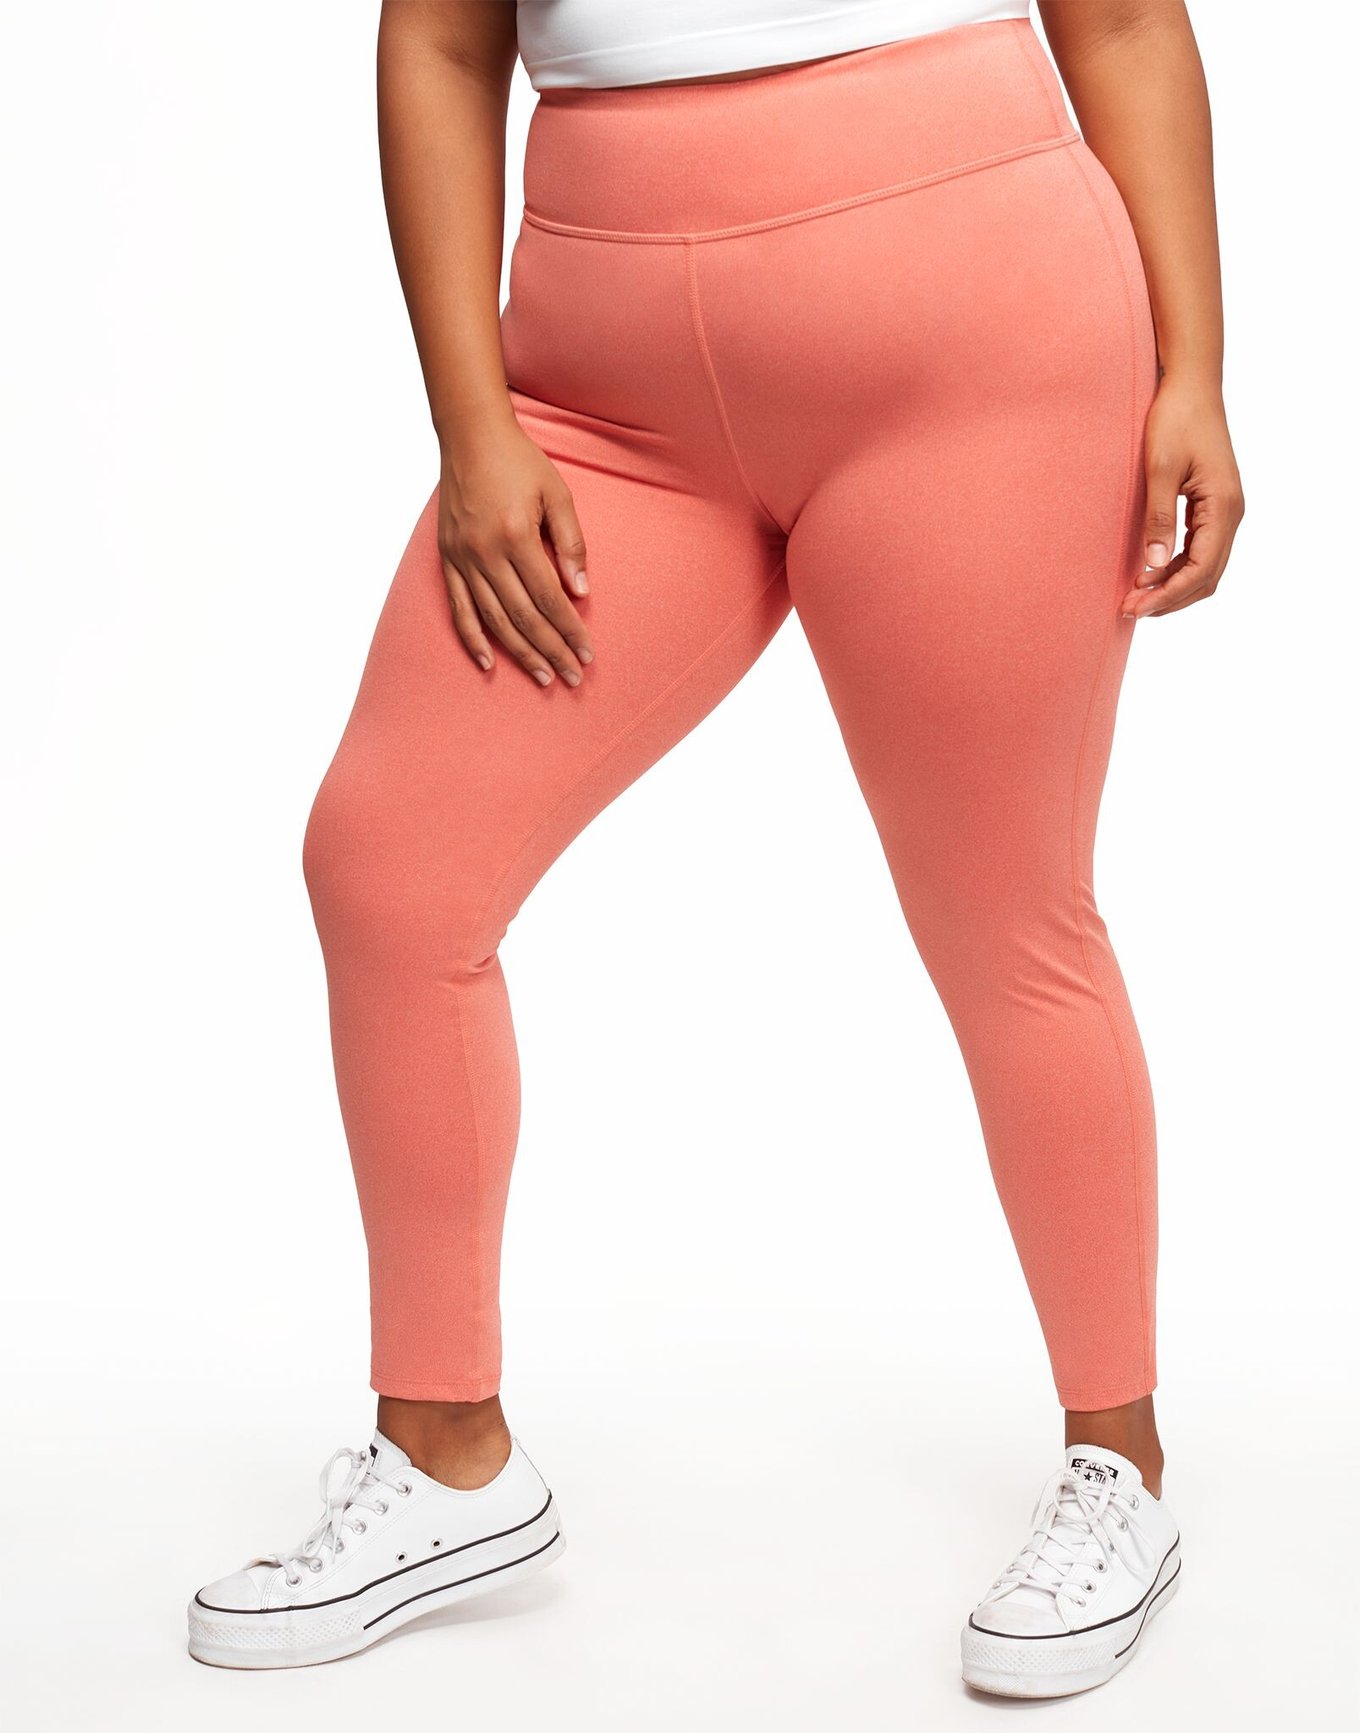 Orange Plus Size Leggings for Women for sale | eBay